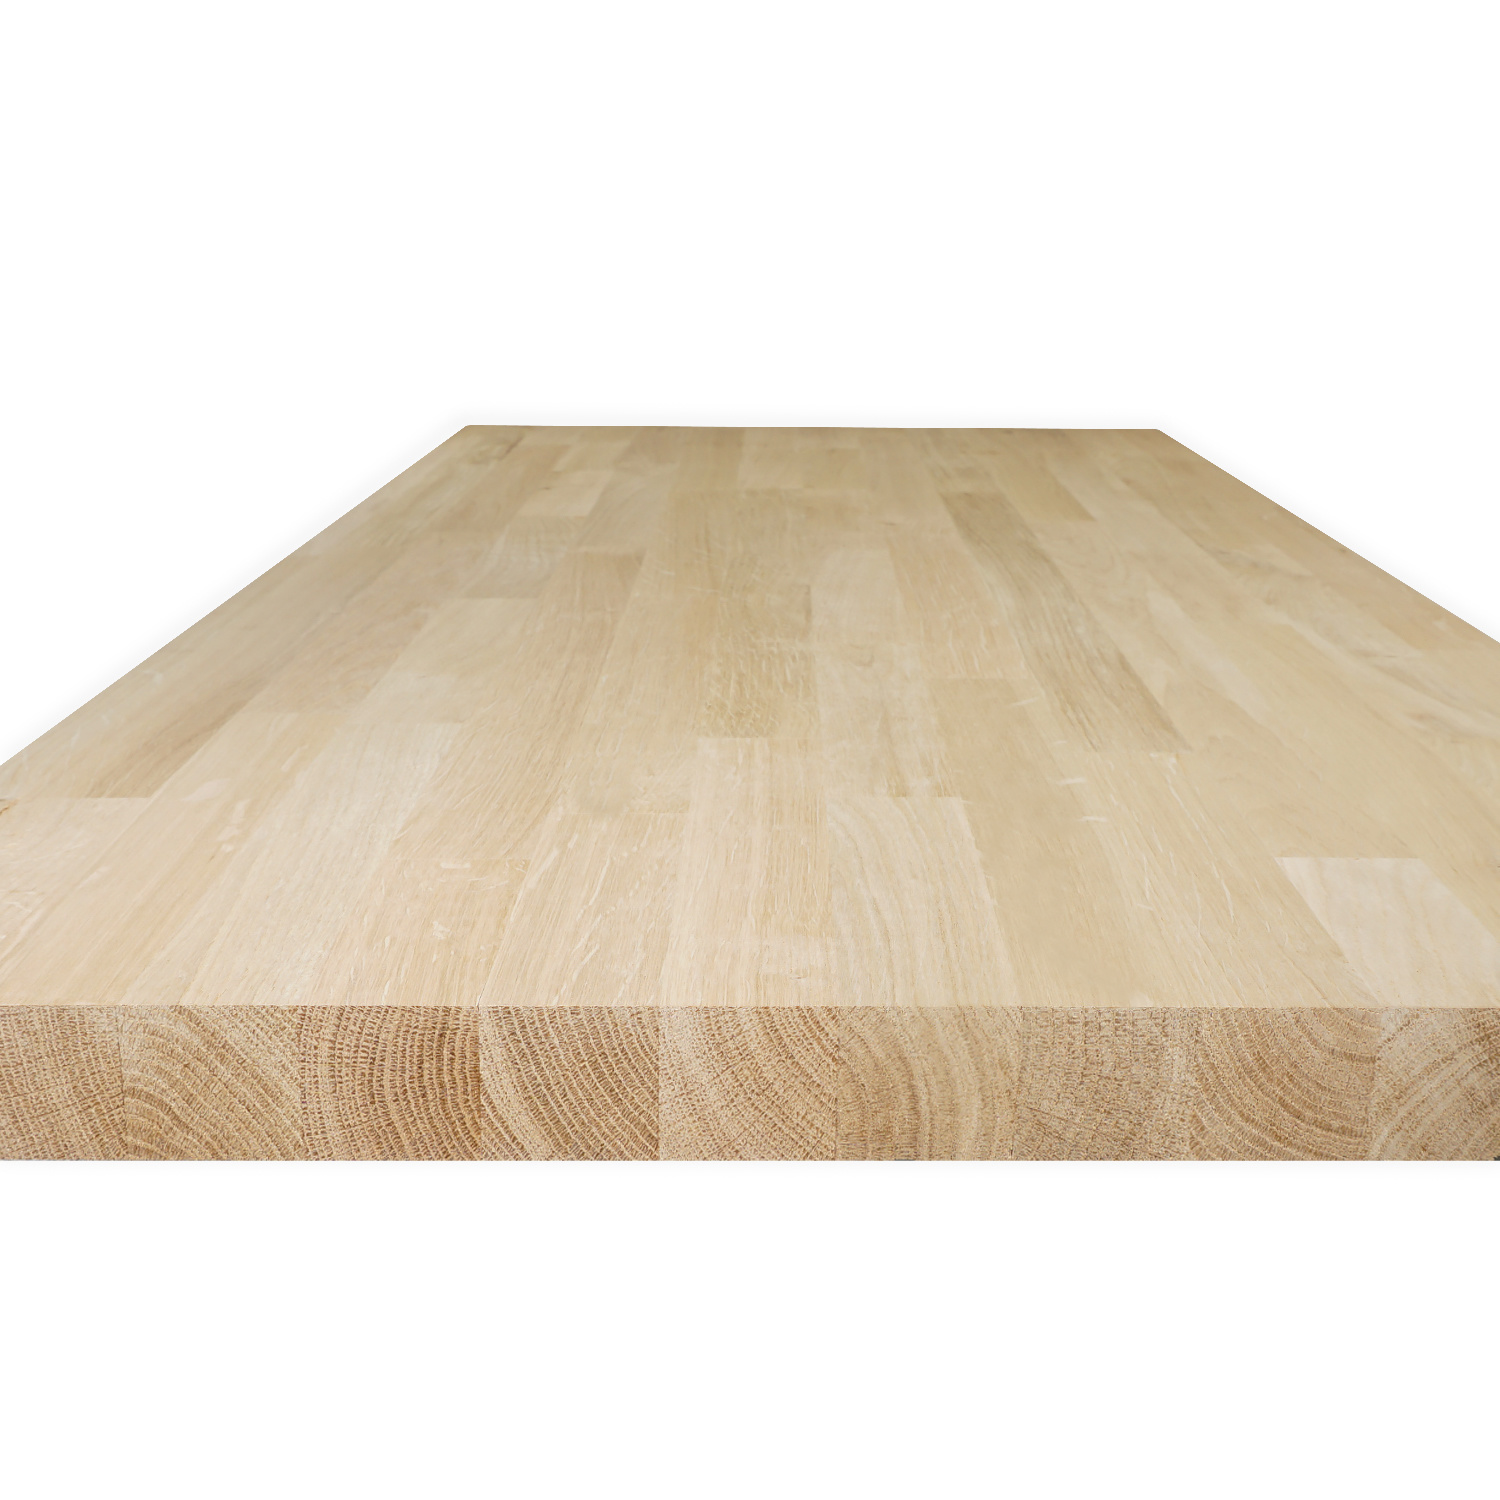  Arbeitsplatte Eiche massiv keilgezinkt - 4 cm dick - Eichenholz A-Qualität - Massivholz - Verleimt & künstlich getrocknet (HF 8-12%)